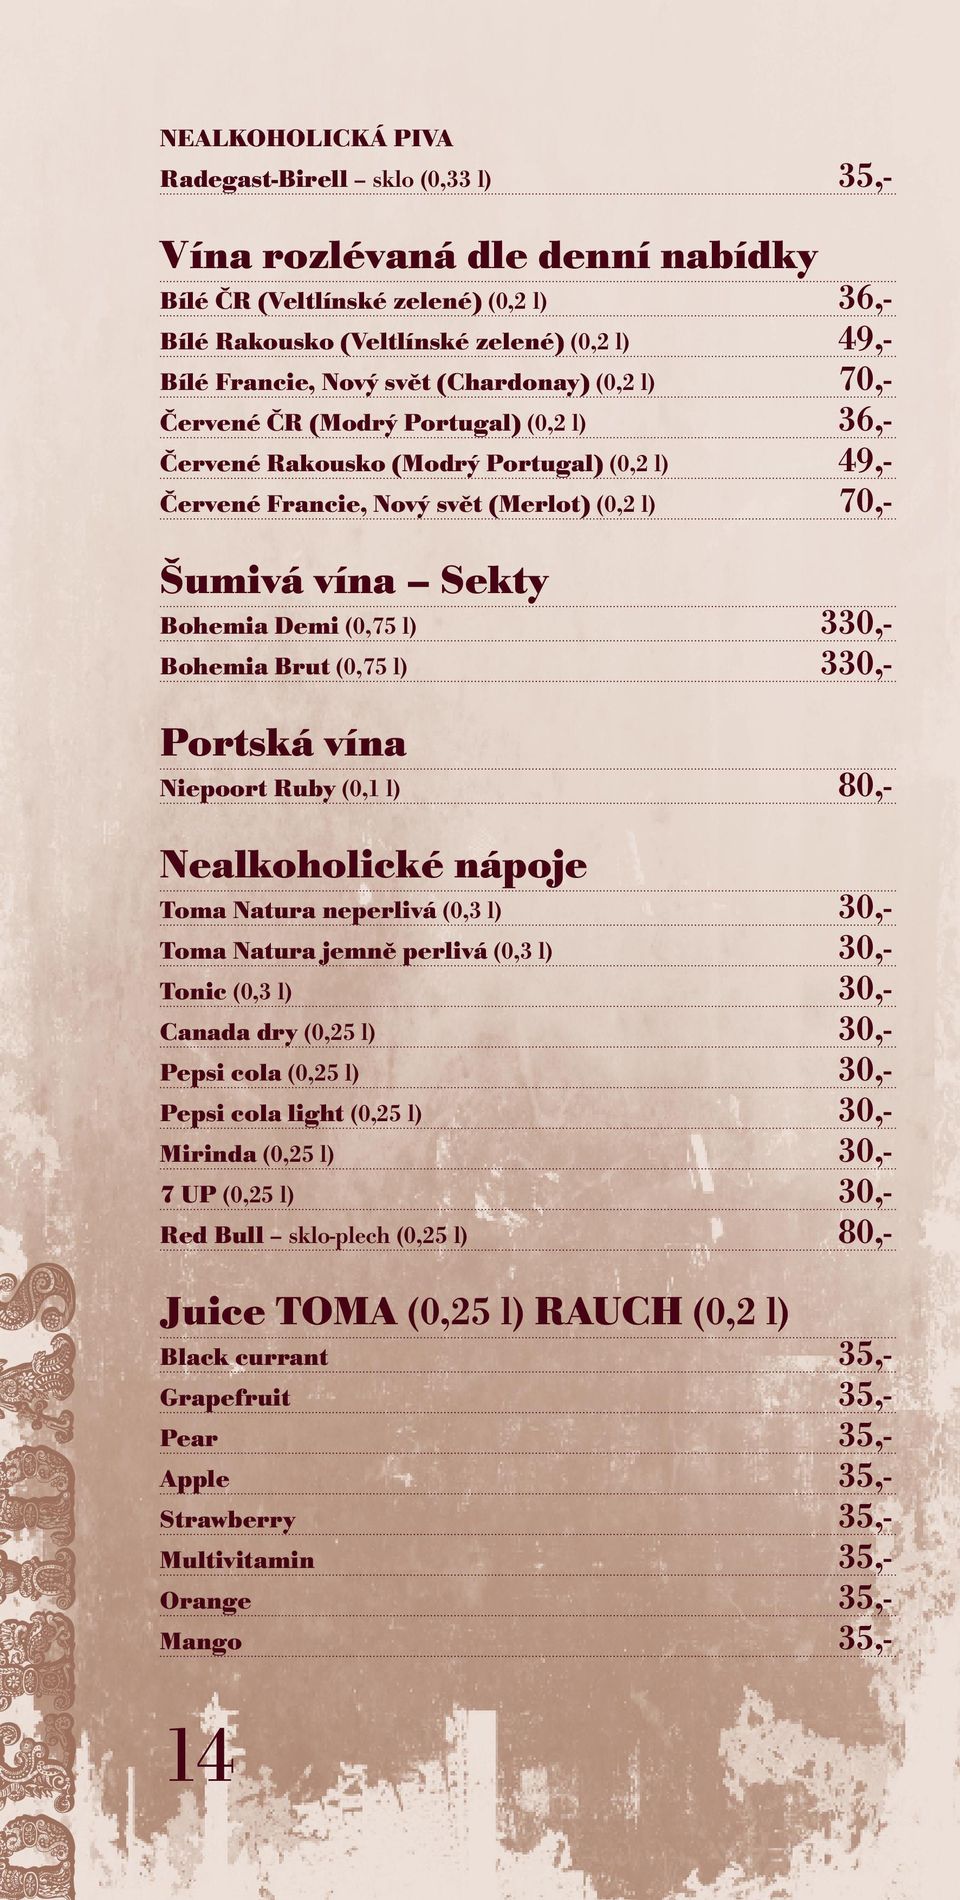 l) 330,- Bohemia Brut (0,75 l) 330,- Portská vína Niepoort Ruby (0,1 l) 80,- Nealkoholické nápoje Toma Natura neperlivá (0,3 l) 30,- Toma Natura jemně perlivá (0,3 l) 30,- Tonic (0,3 l) 30,- Canada